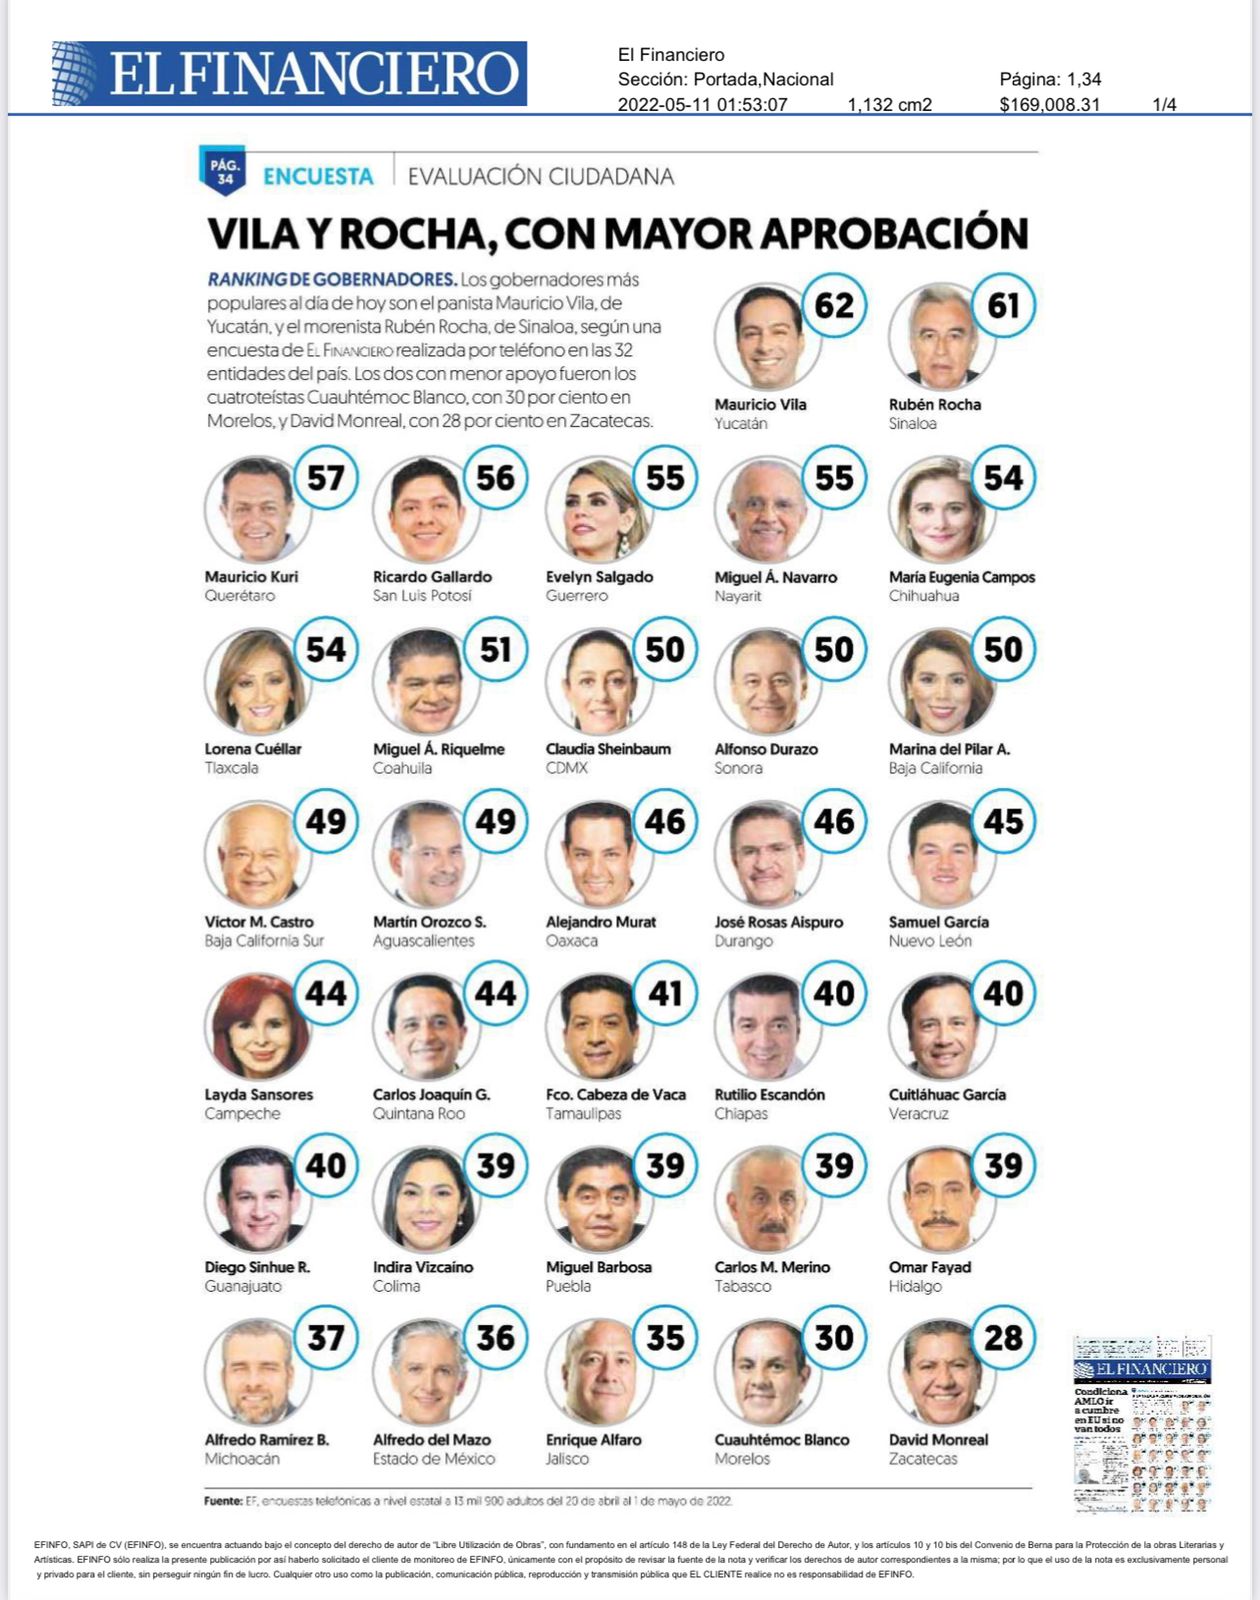 56% de la población potosina aprueba la gestión de Ricardo Gallardo según los resultados correspondientes a abril del 2022